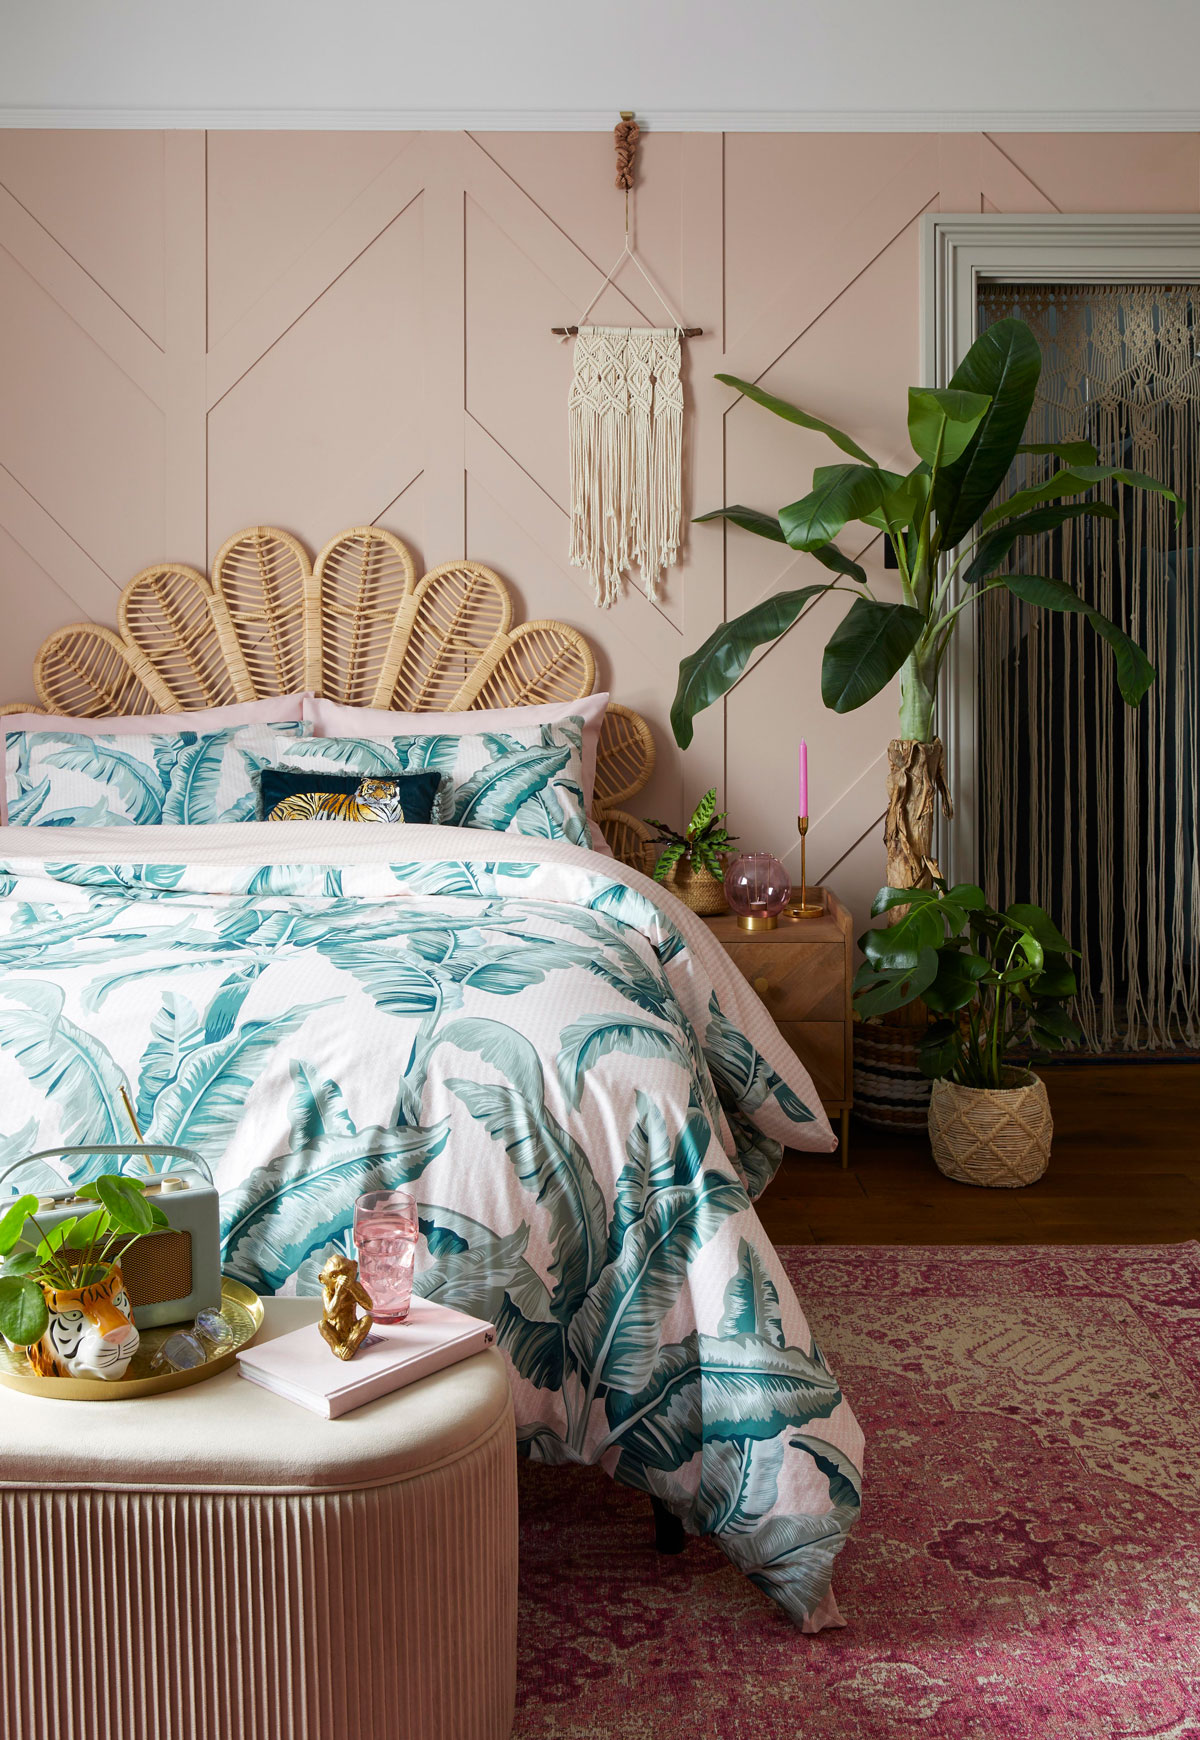 Spálňa s izbovými rastlinami zariadená v tropickom štýle, na zemi je tkaný orientálny koberec, posteľ má čelo v tvare listu a je ustlaná s obliečkami s motívom exotických rastlín, vedľa je drevený nočný stolík, štýl dopĺňajú ozdoby so zvieratami z džungle